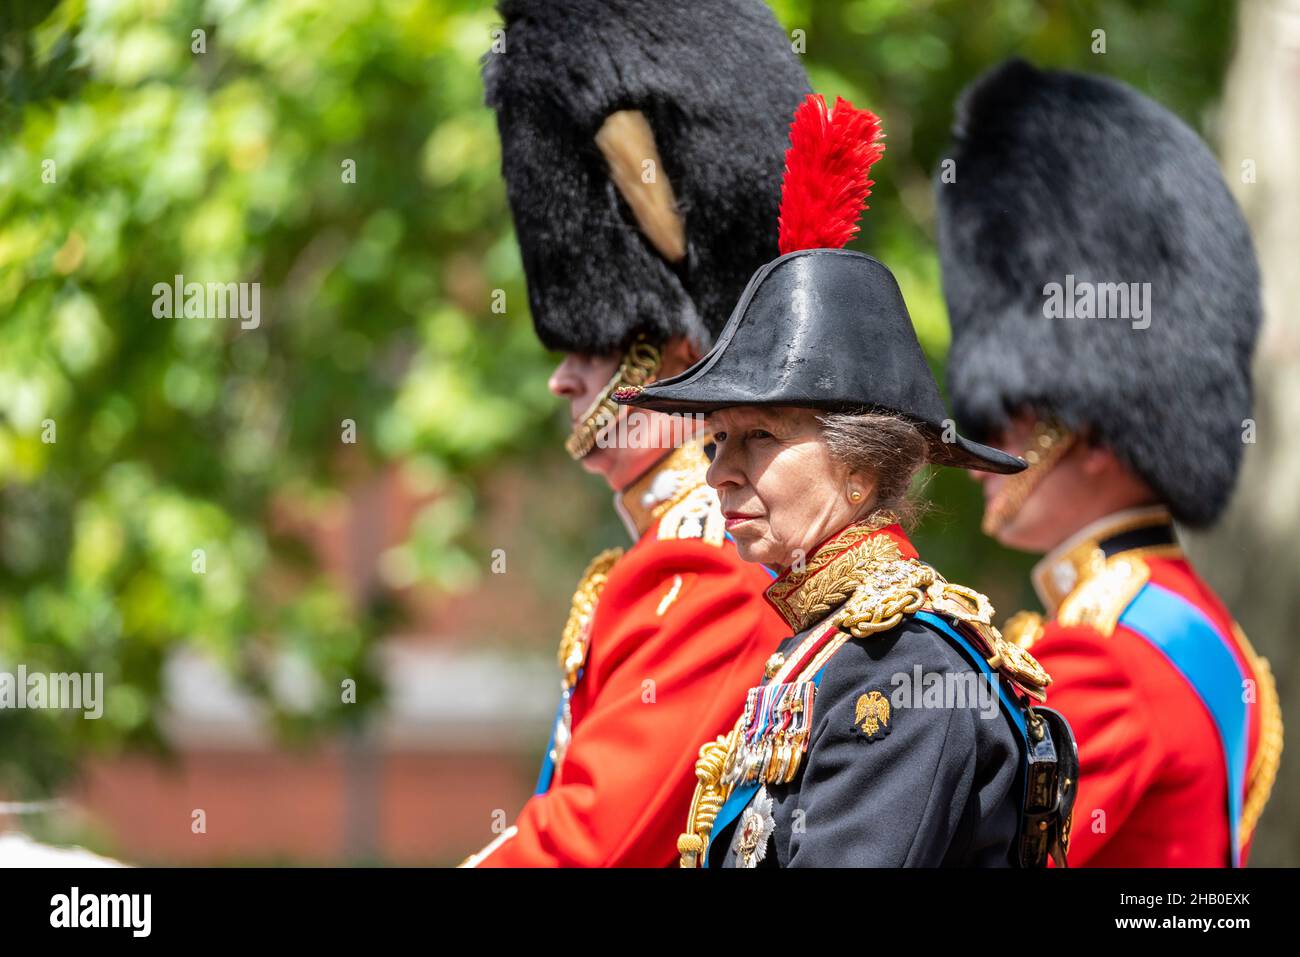 Principessa Anna. Anne, Principessa reale in uniforme militare cerimoniale durante Trooping The Color 2019, Londra, Inghilterra, Regno Unito Foto Stock